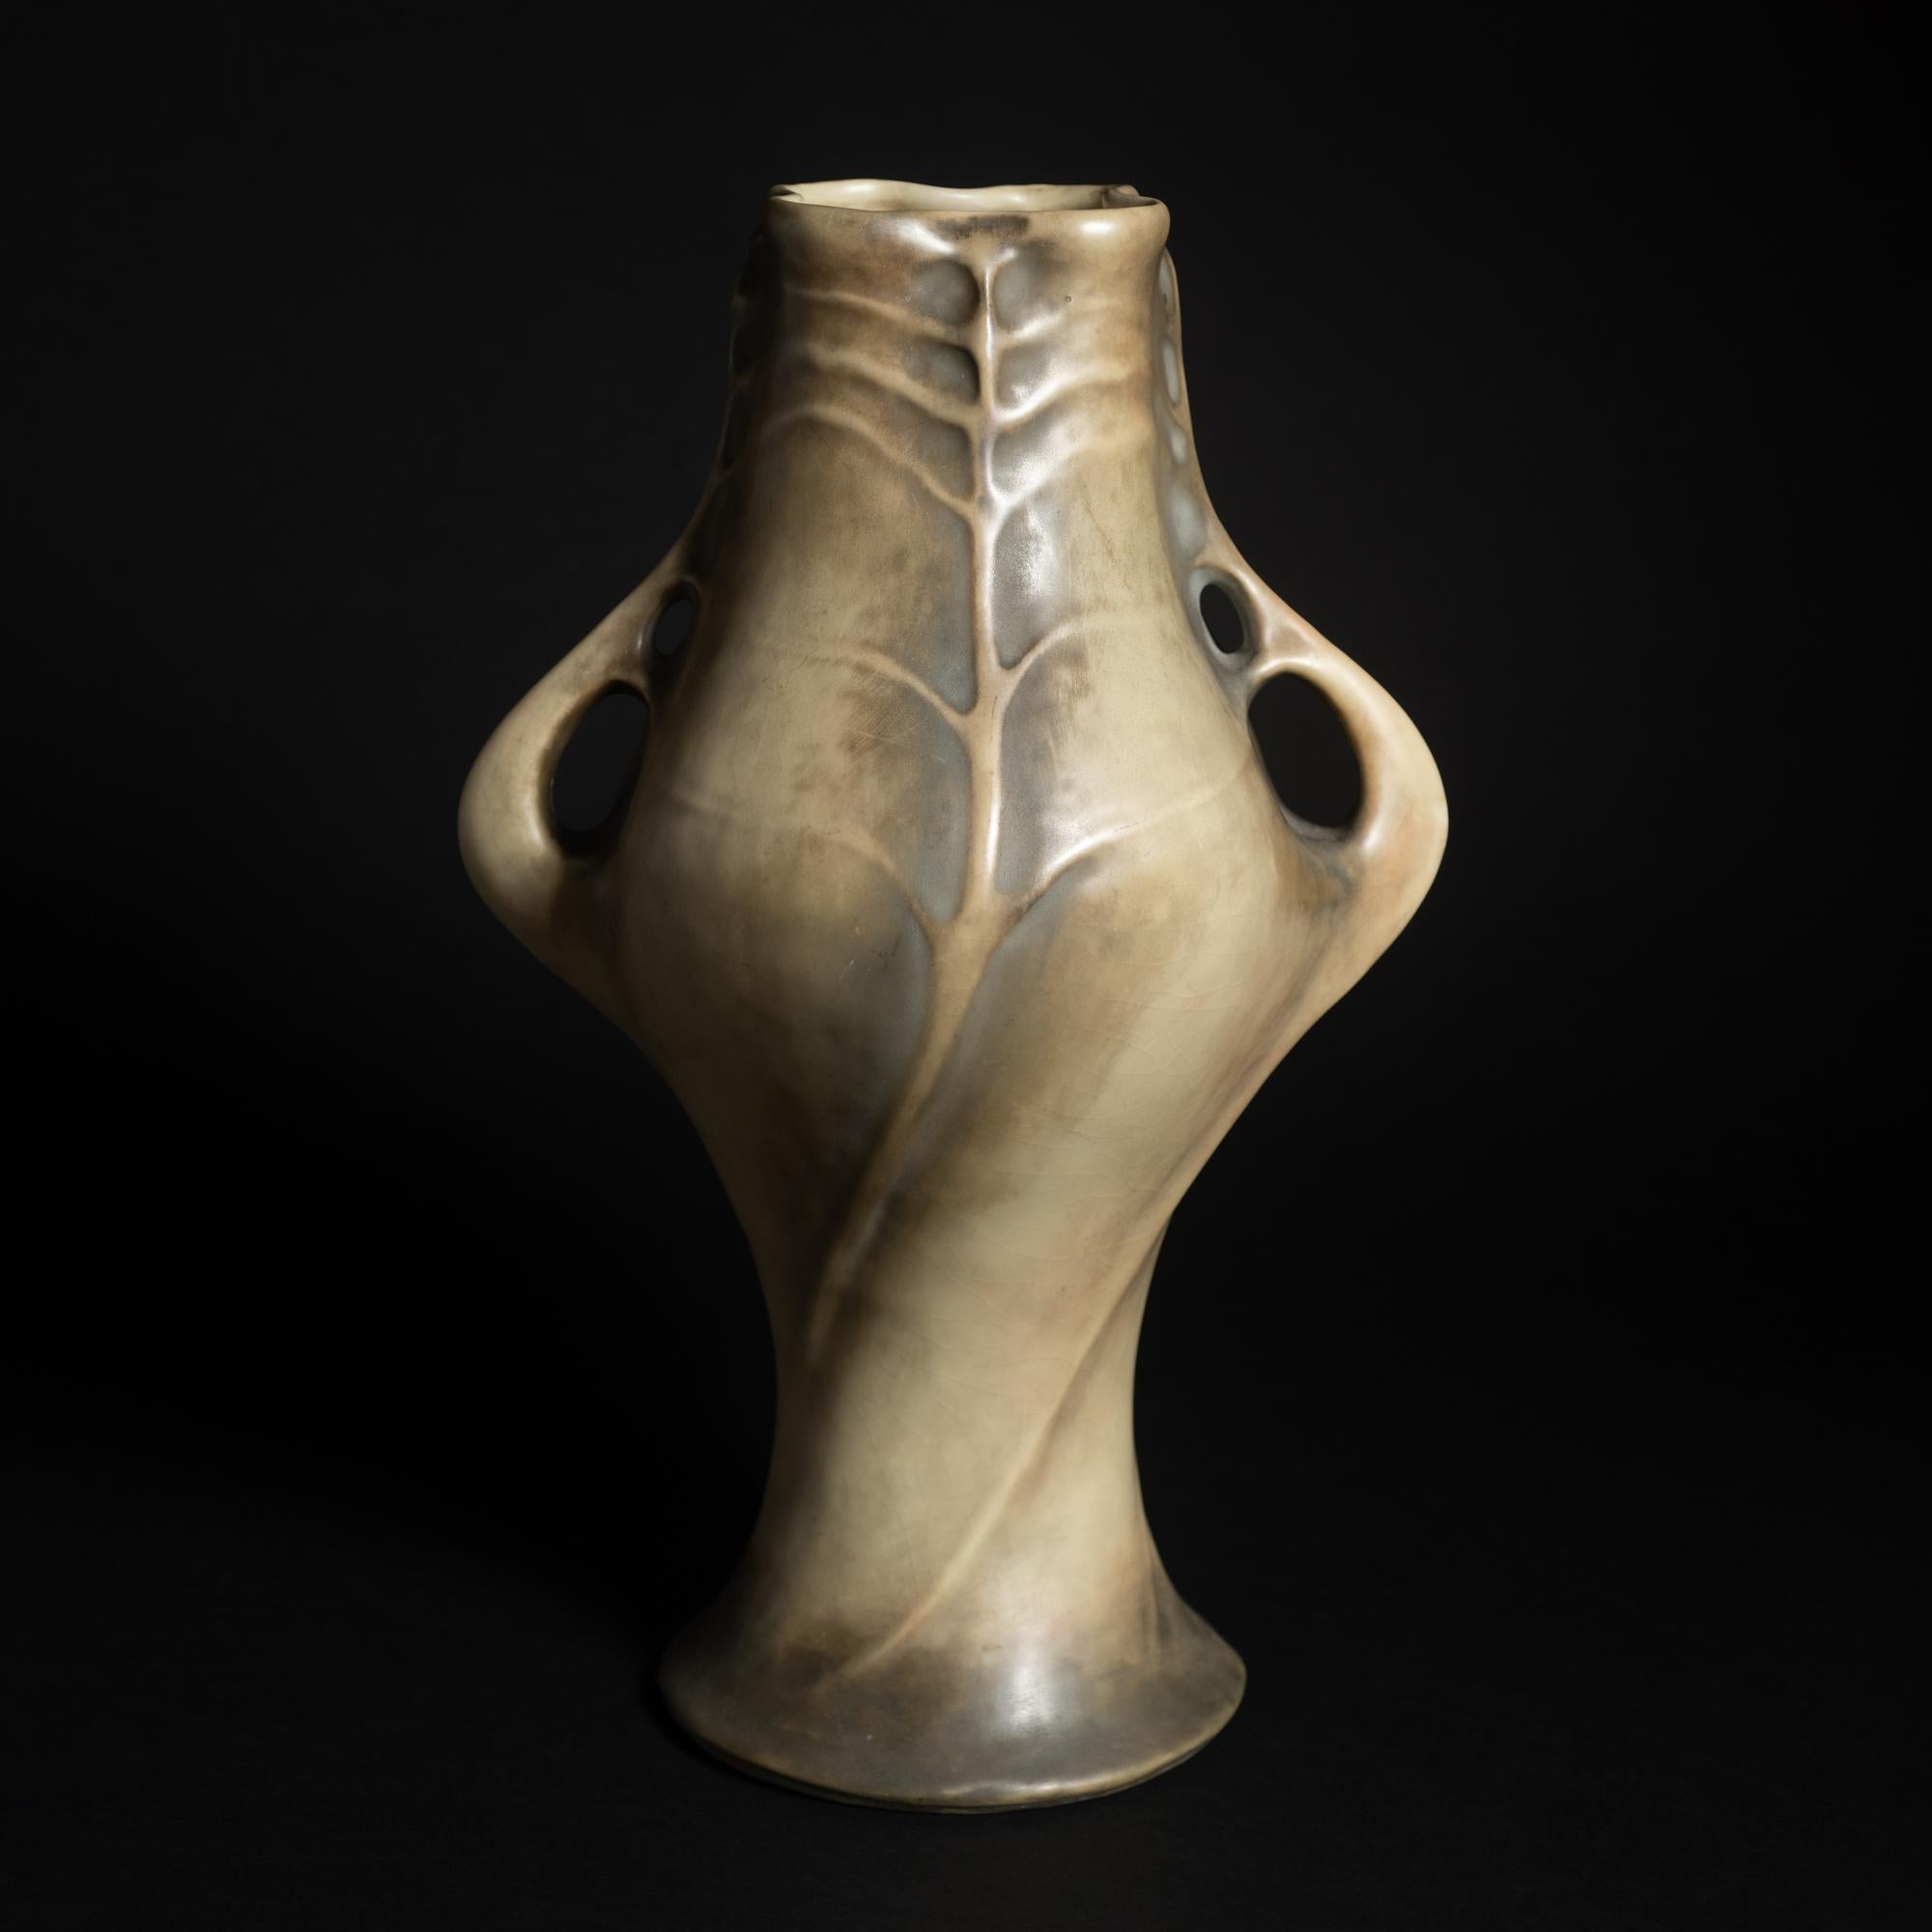 Modèle #3540

Paul Dachsel était le gendre d'Alfred Stellmacher, le fondateur de la société de poterie Amphora à Turn-Teplitz, alors en Autriche. Très peu de choses sont connues ou ont été écrites sur Dachsel. Il a travaillé comme designer à Amphora